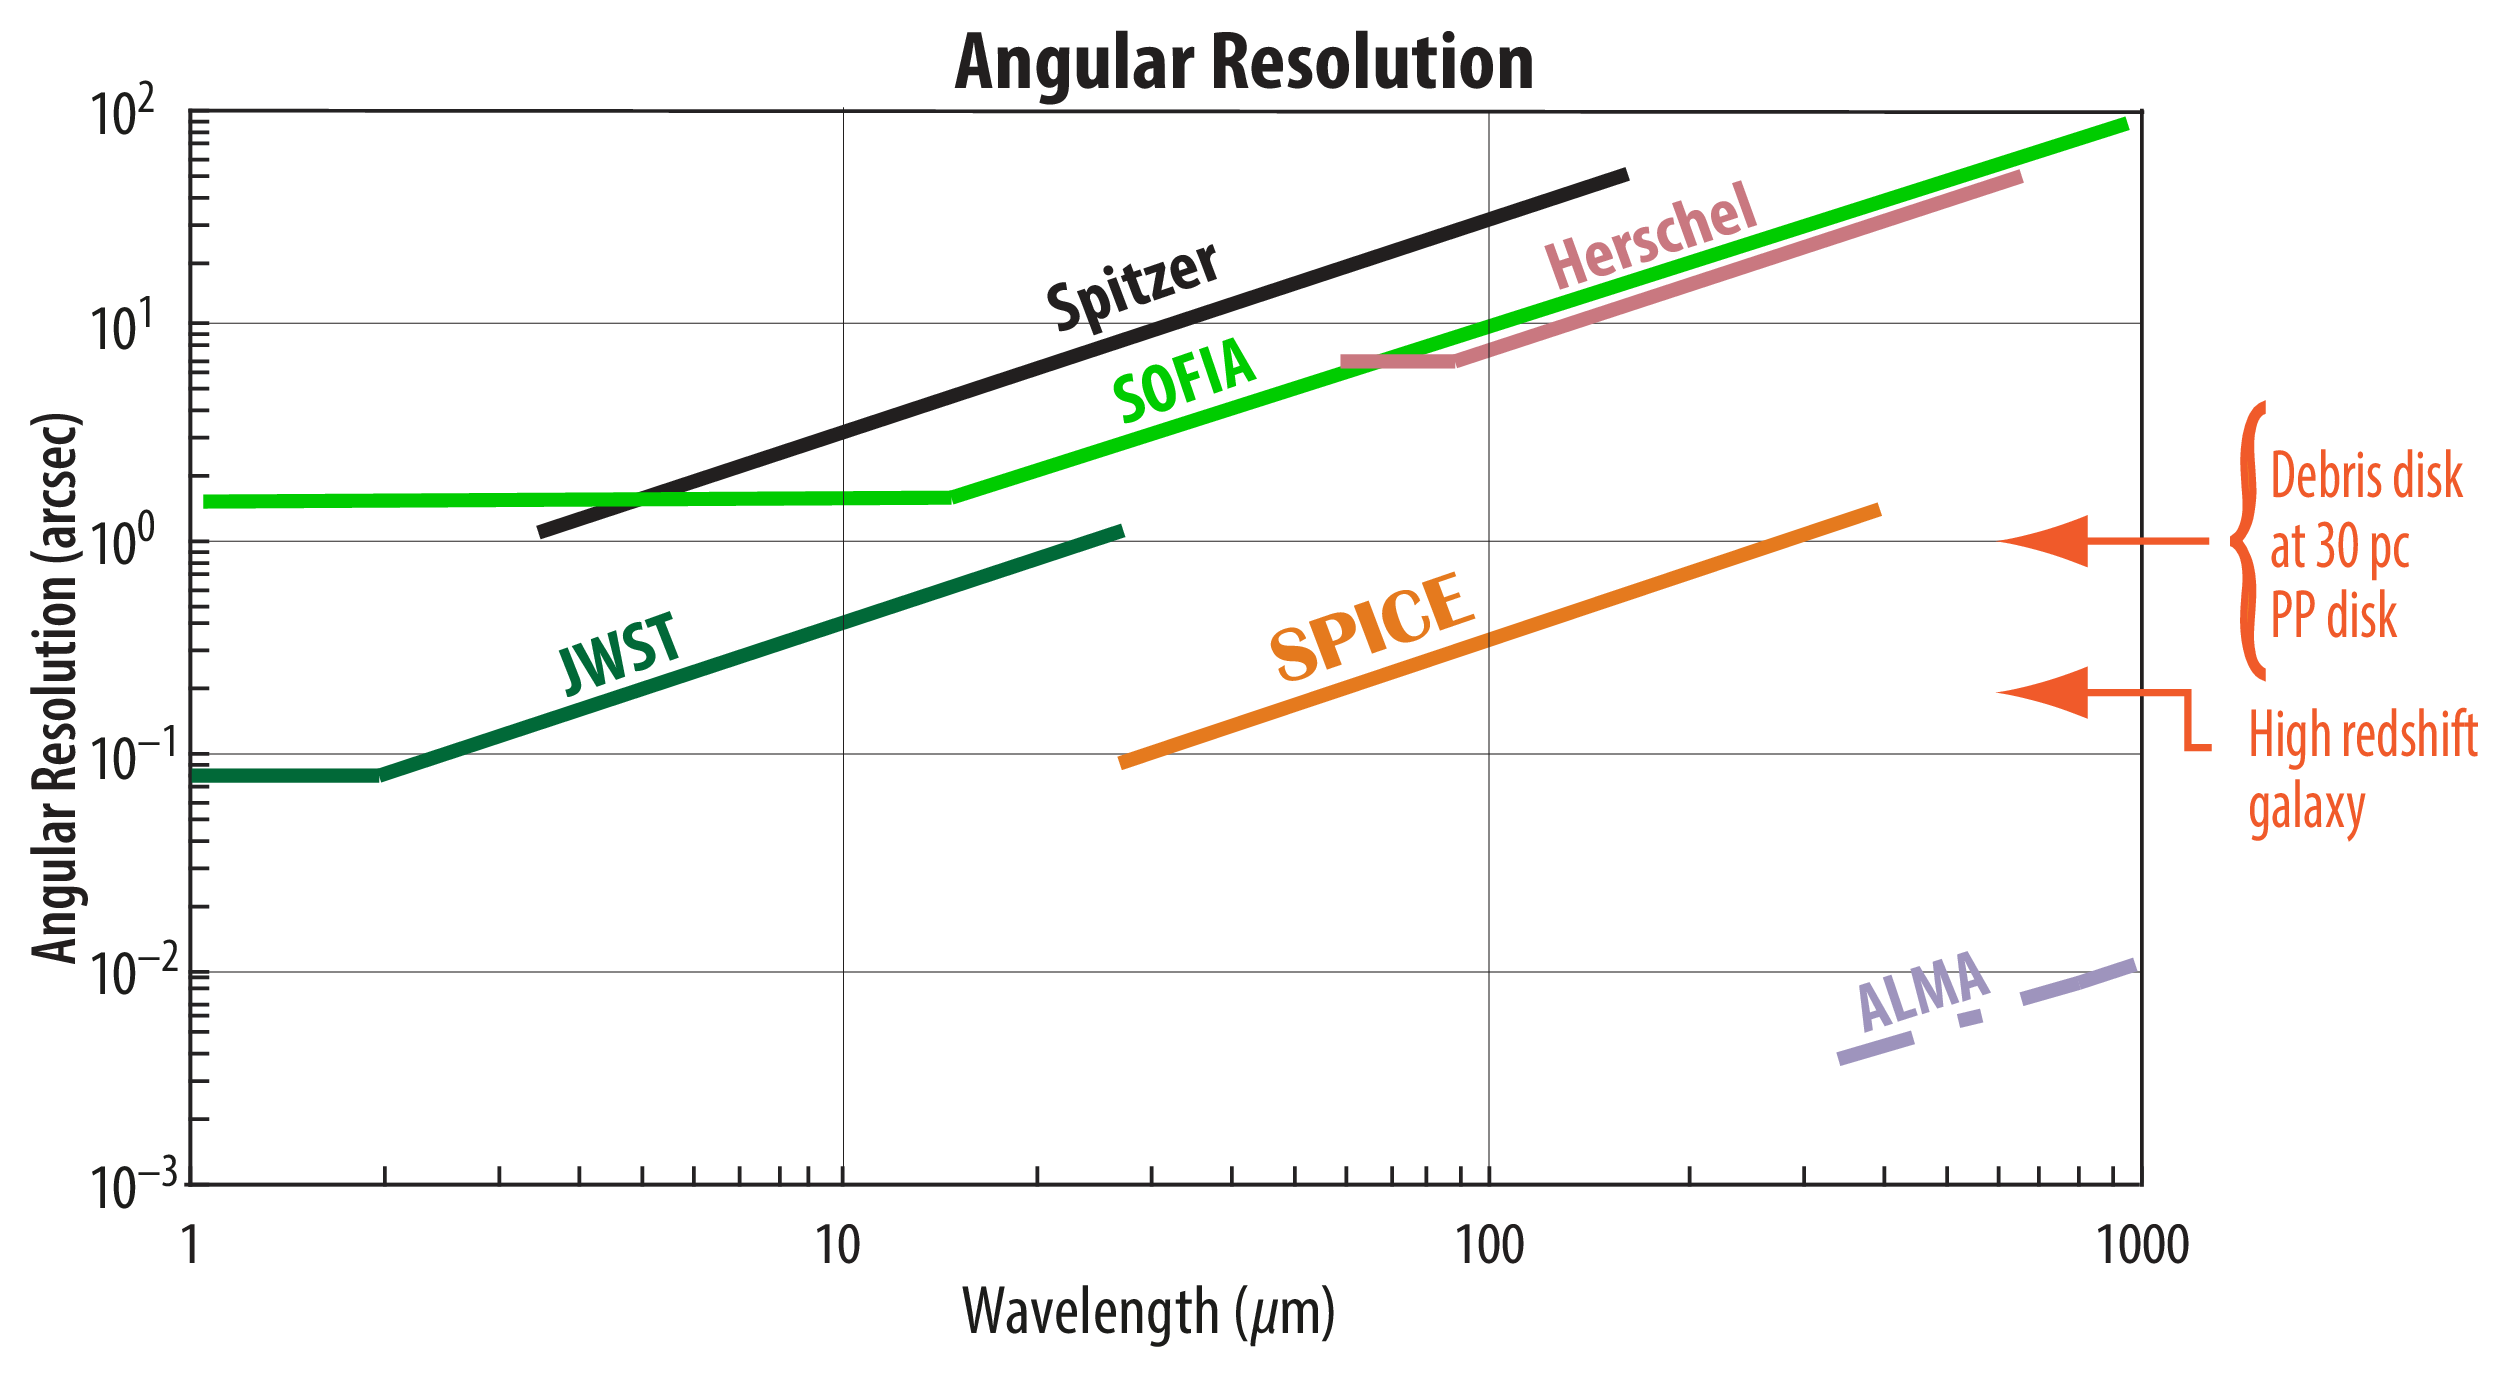 Angular Resolution graph